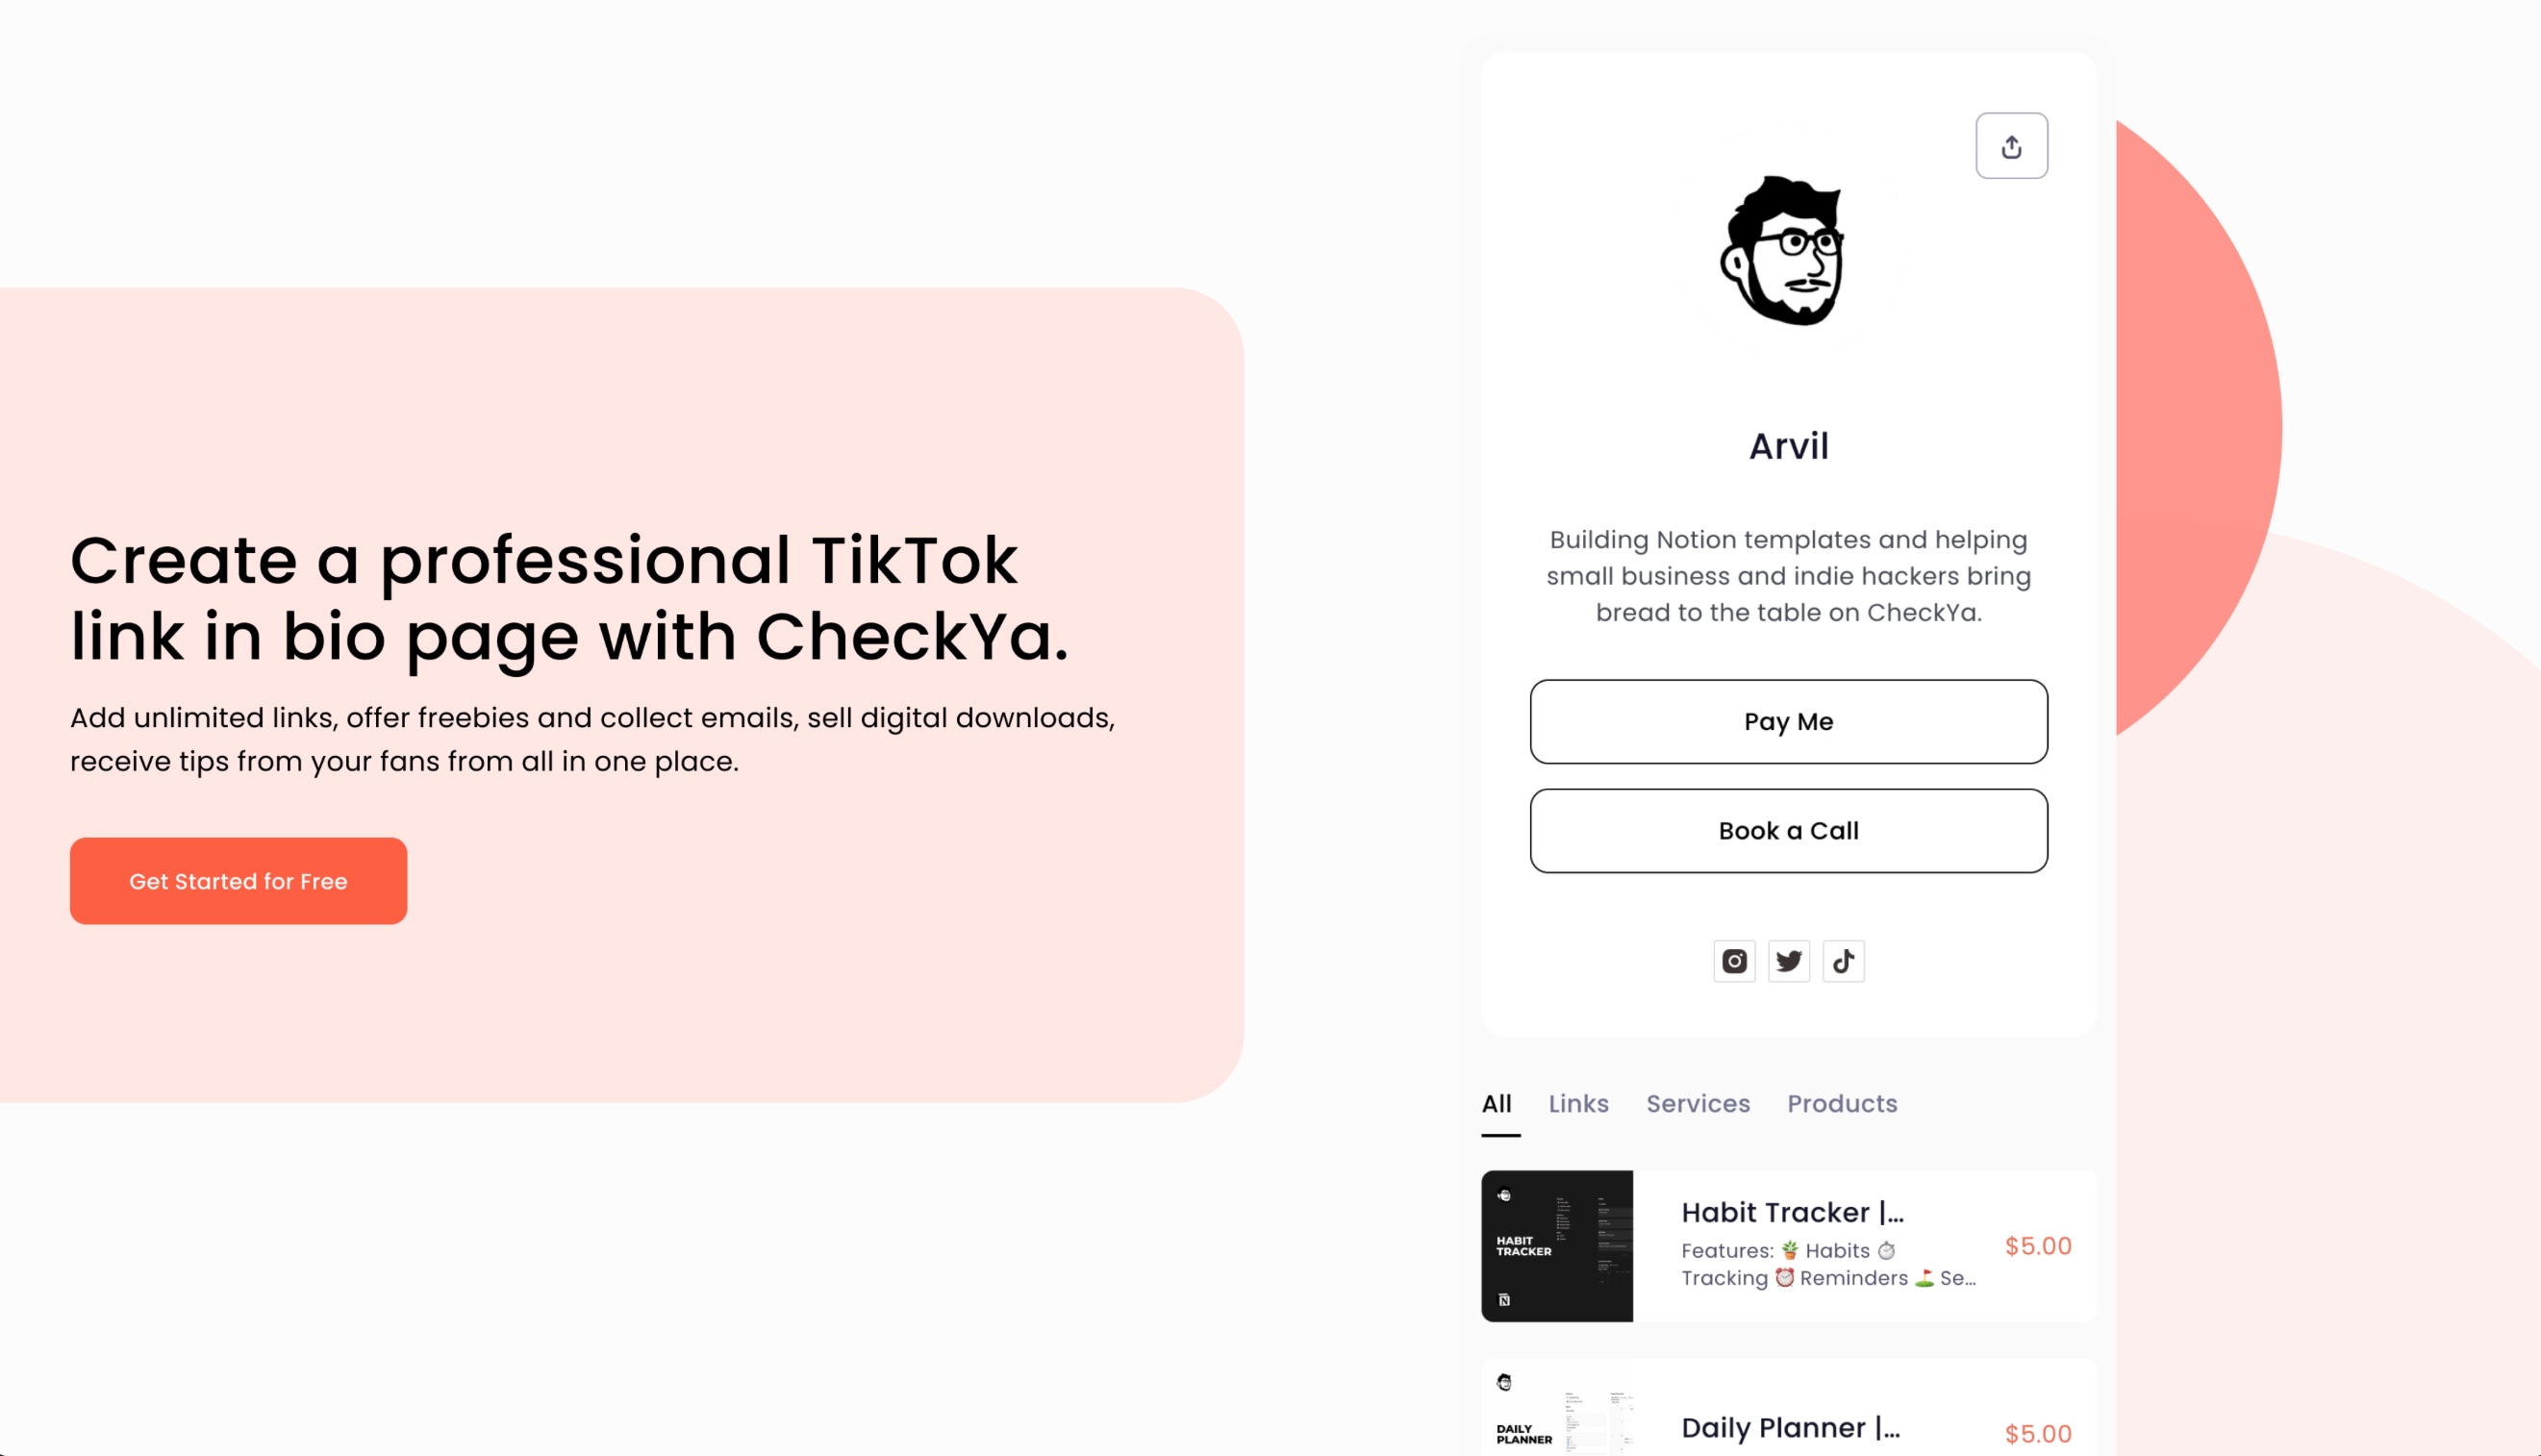 Create your CheckYa link in bio profile.